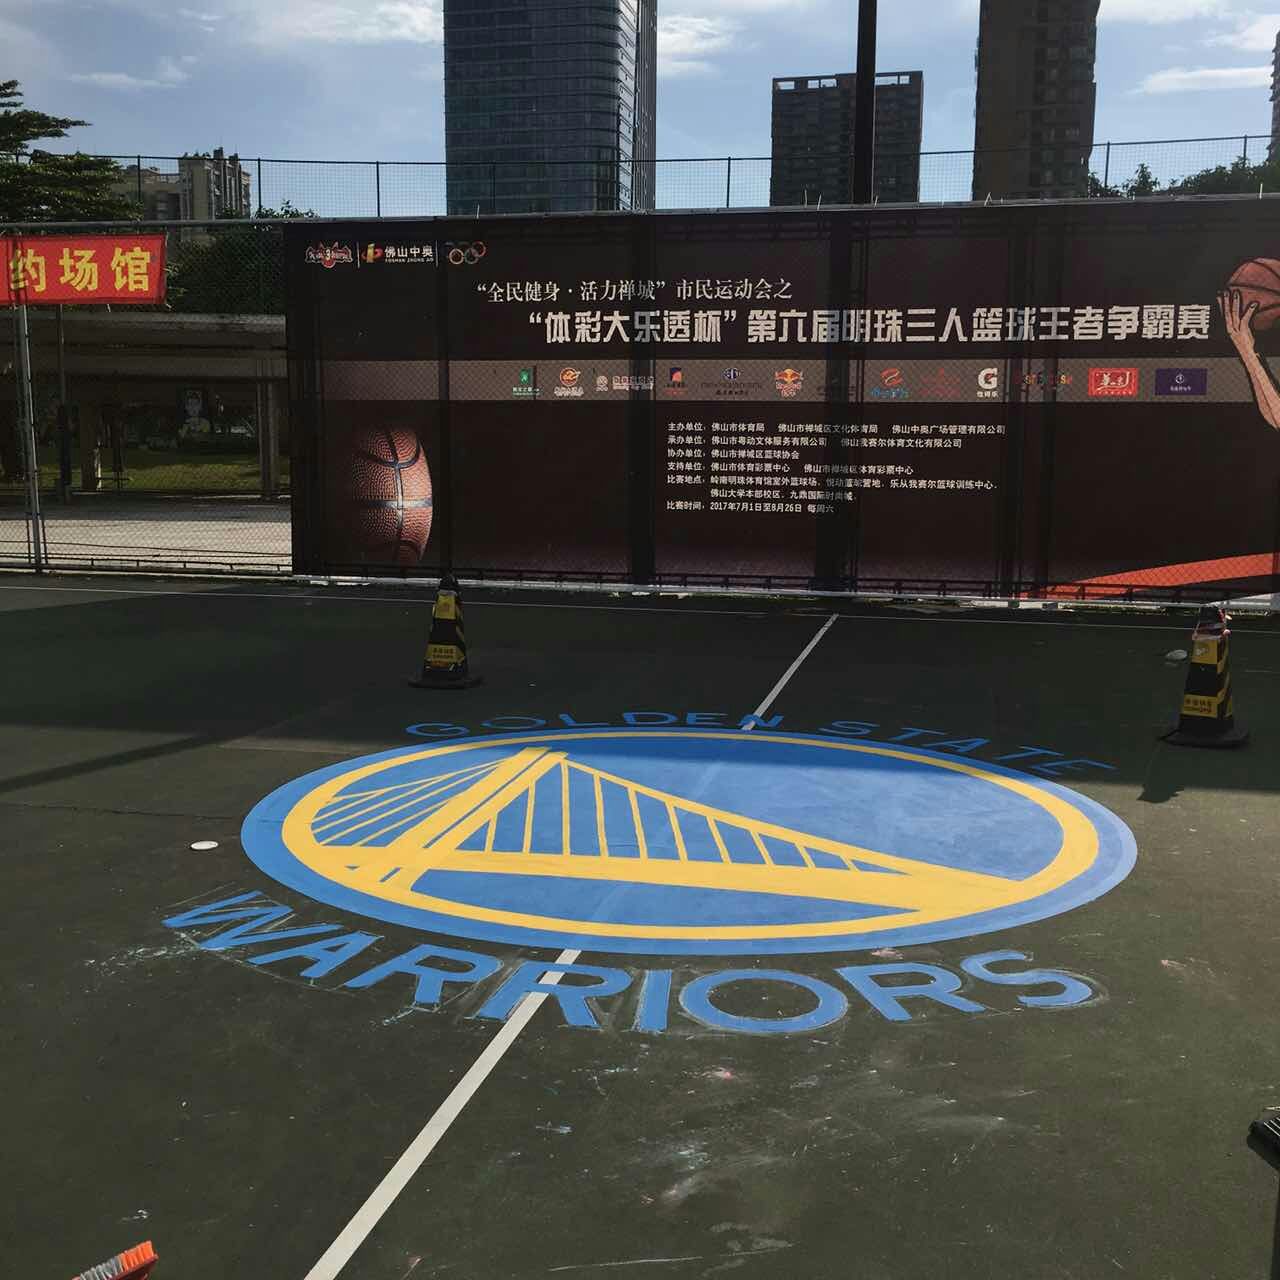 佛山市岭南明珠体育馆 室外丙烯酸篮球场 16支球队logo 球场地面NBA涂鸦改造施工中